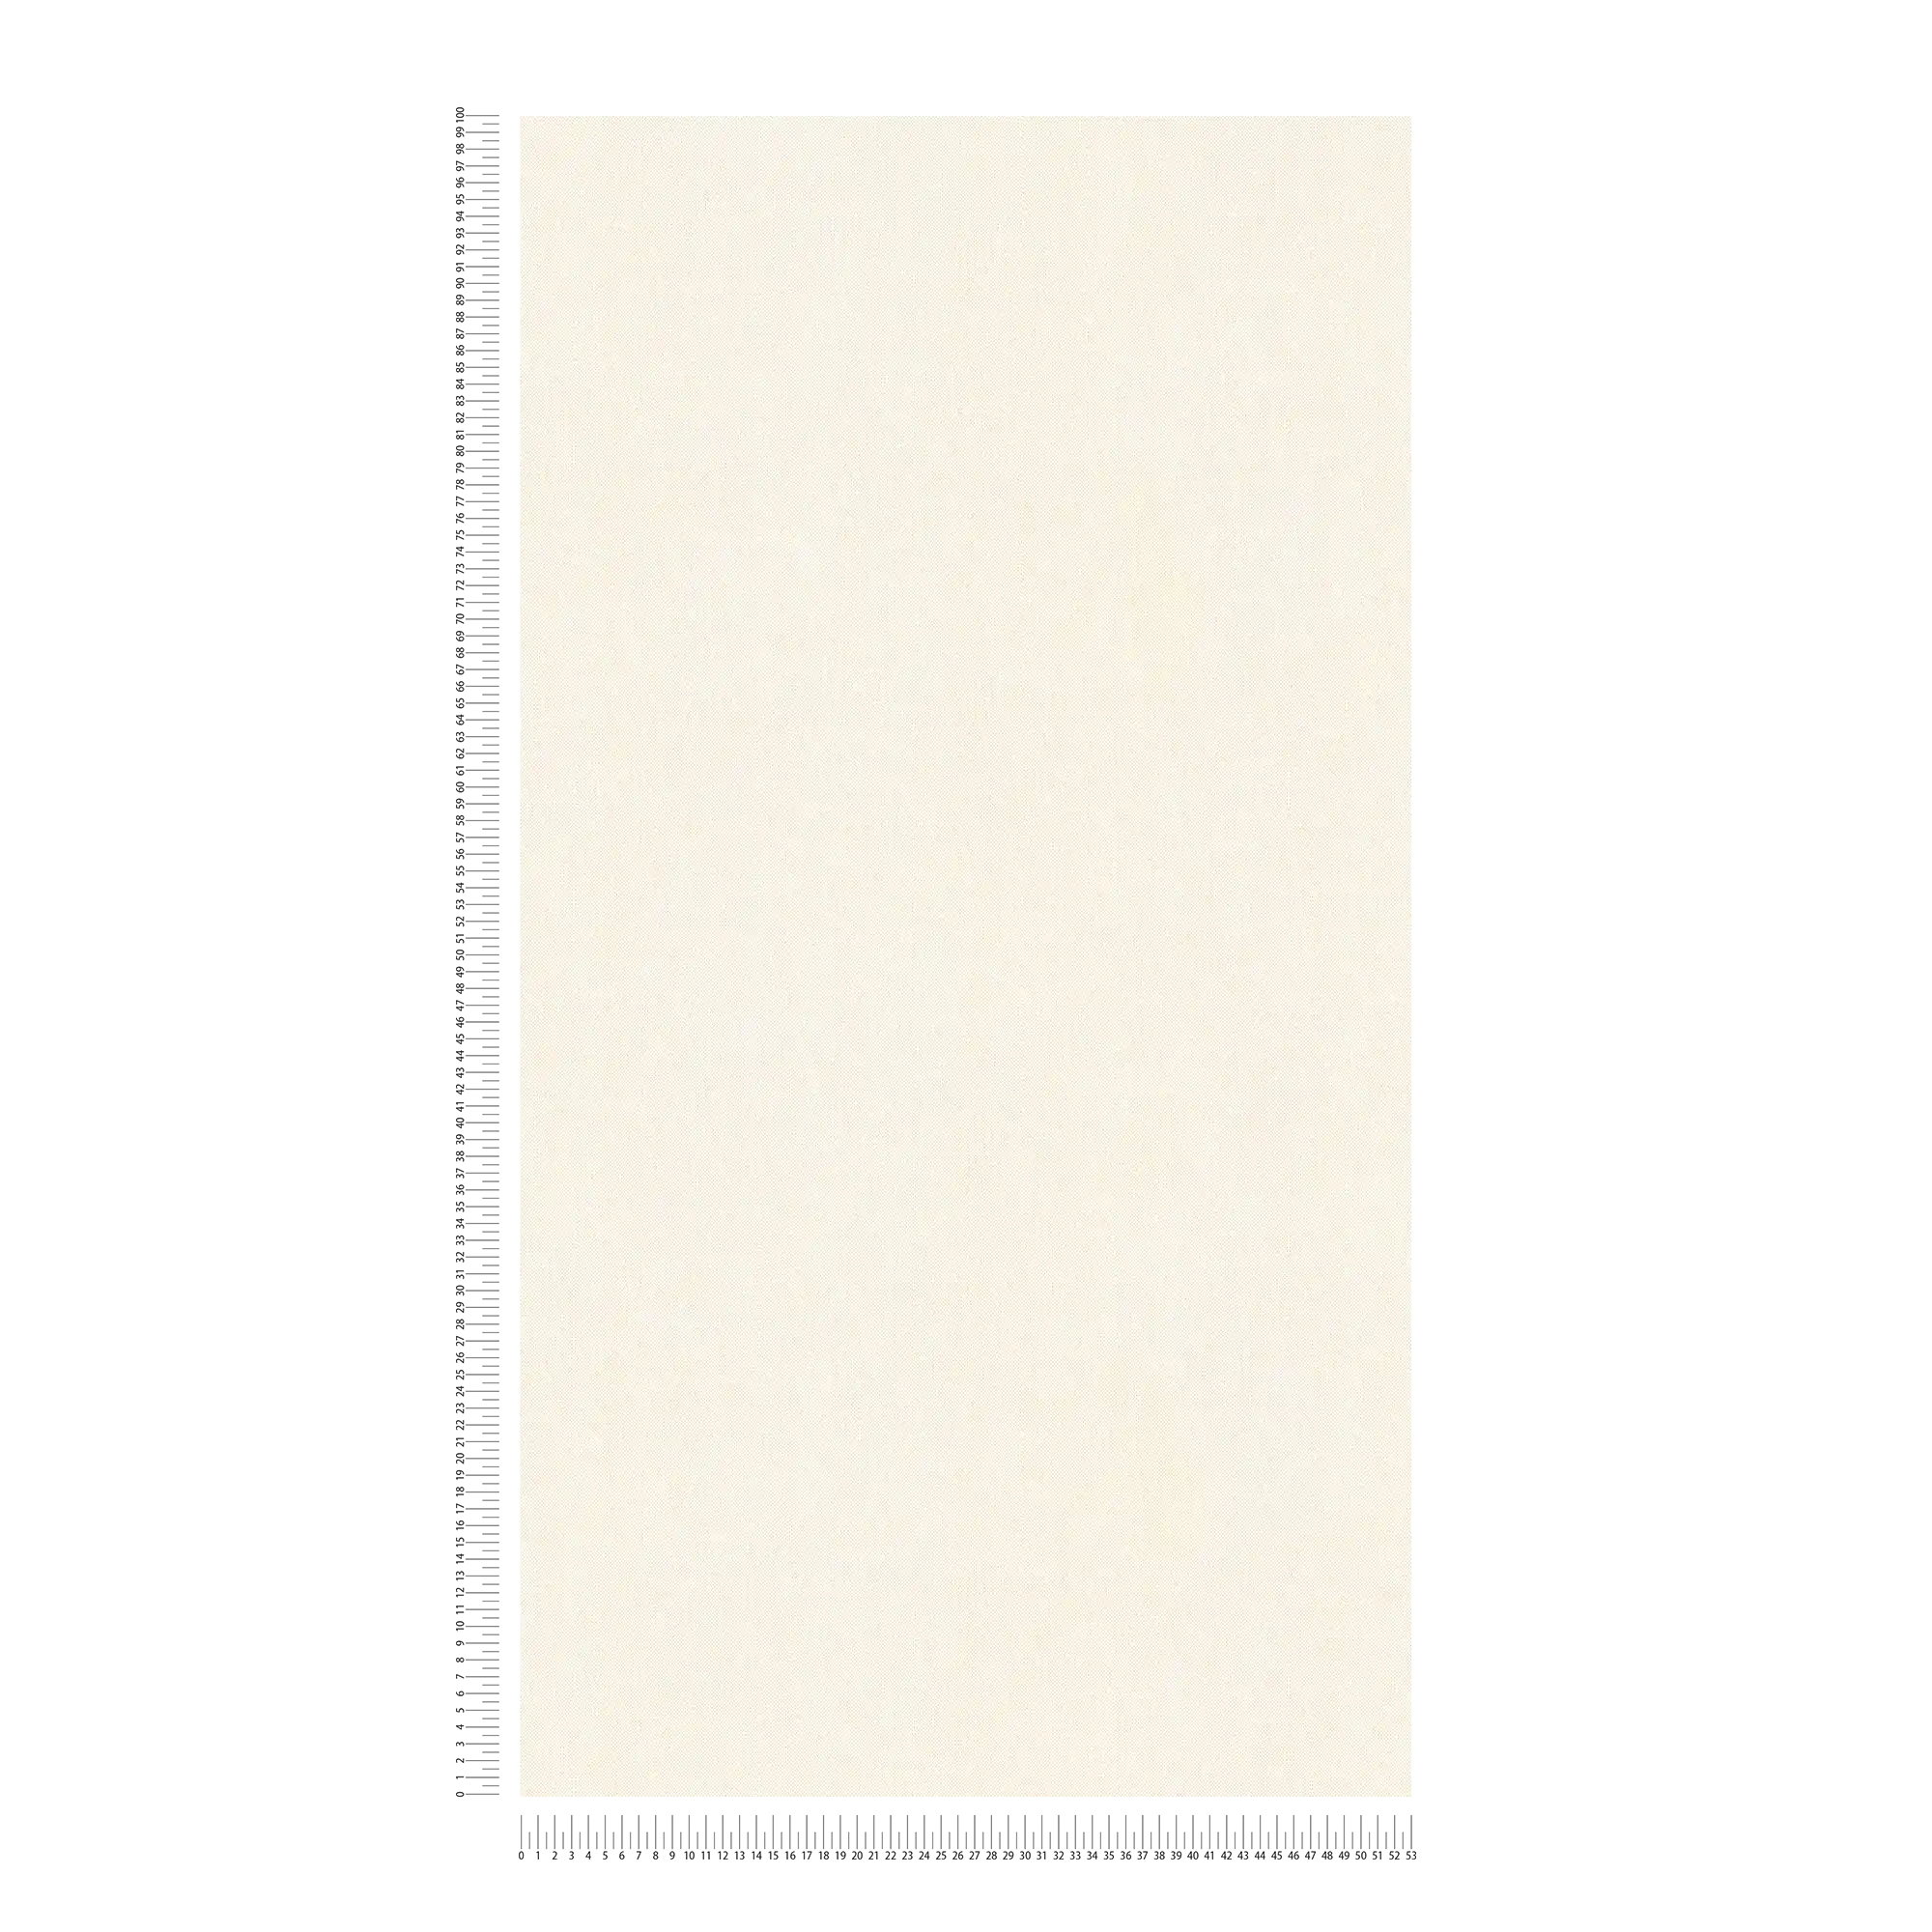             Wallpaper vintage white & matte with textile texture - white, cream
        